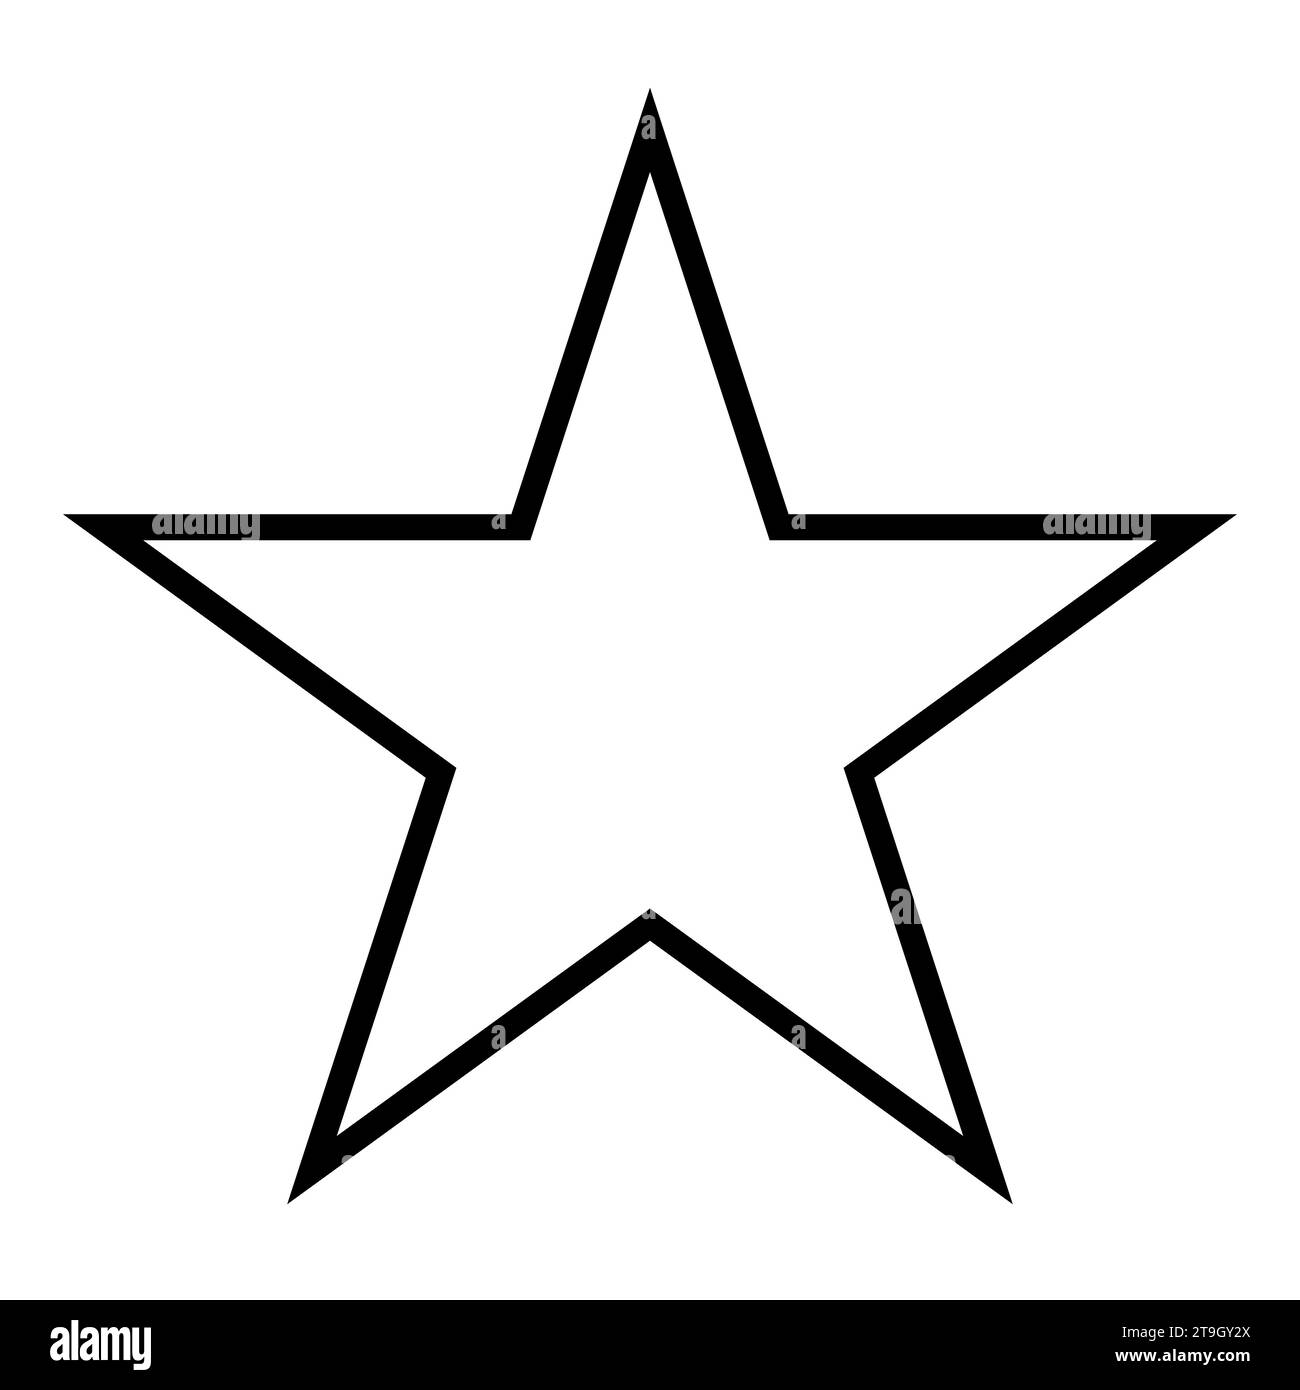 Sternform Symbol, schwarz-weiße Vektor-Silhouette Illustration eines einfachen fünfzackigen Sterns Stock Vektor